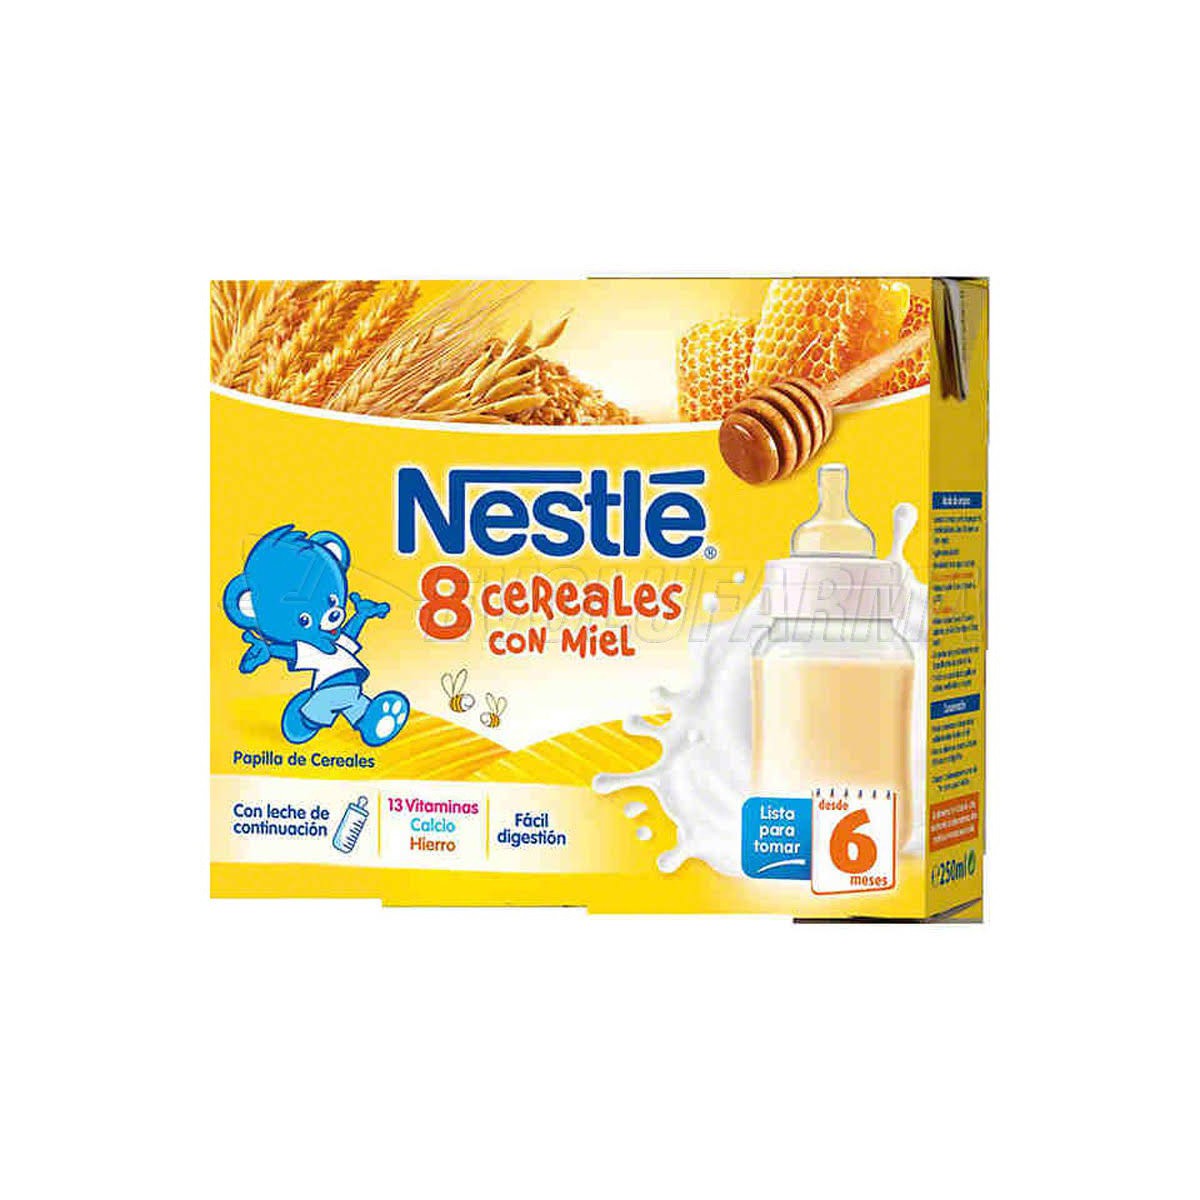 Nestle 8 cereales miel brick 2x250